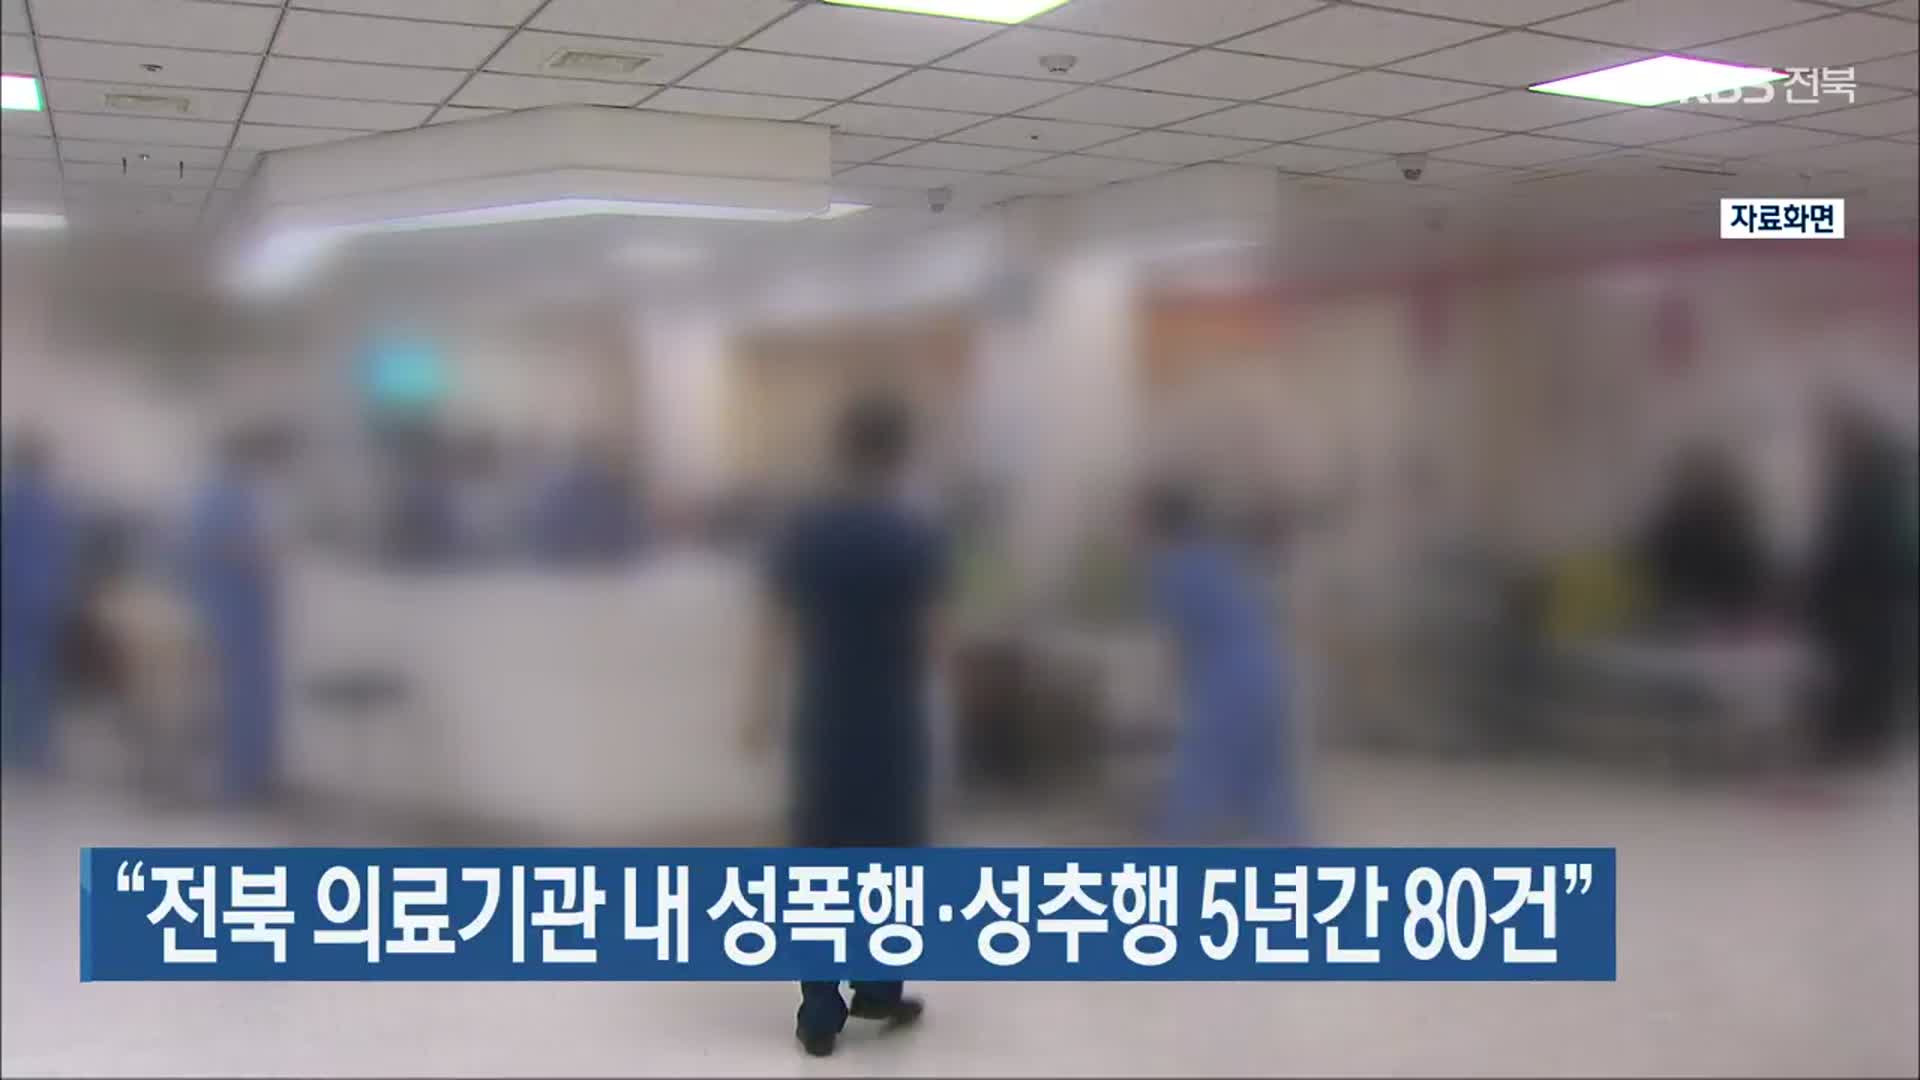 “전북 의료기관 내 성폭행·성추행 5년간 80건”